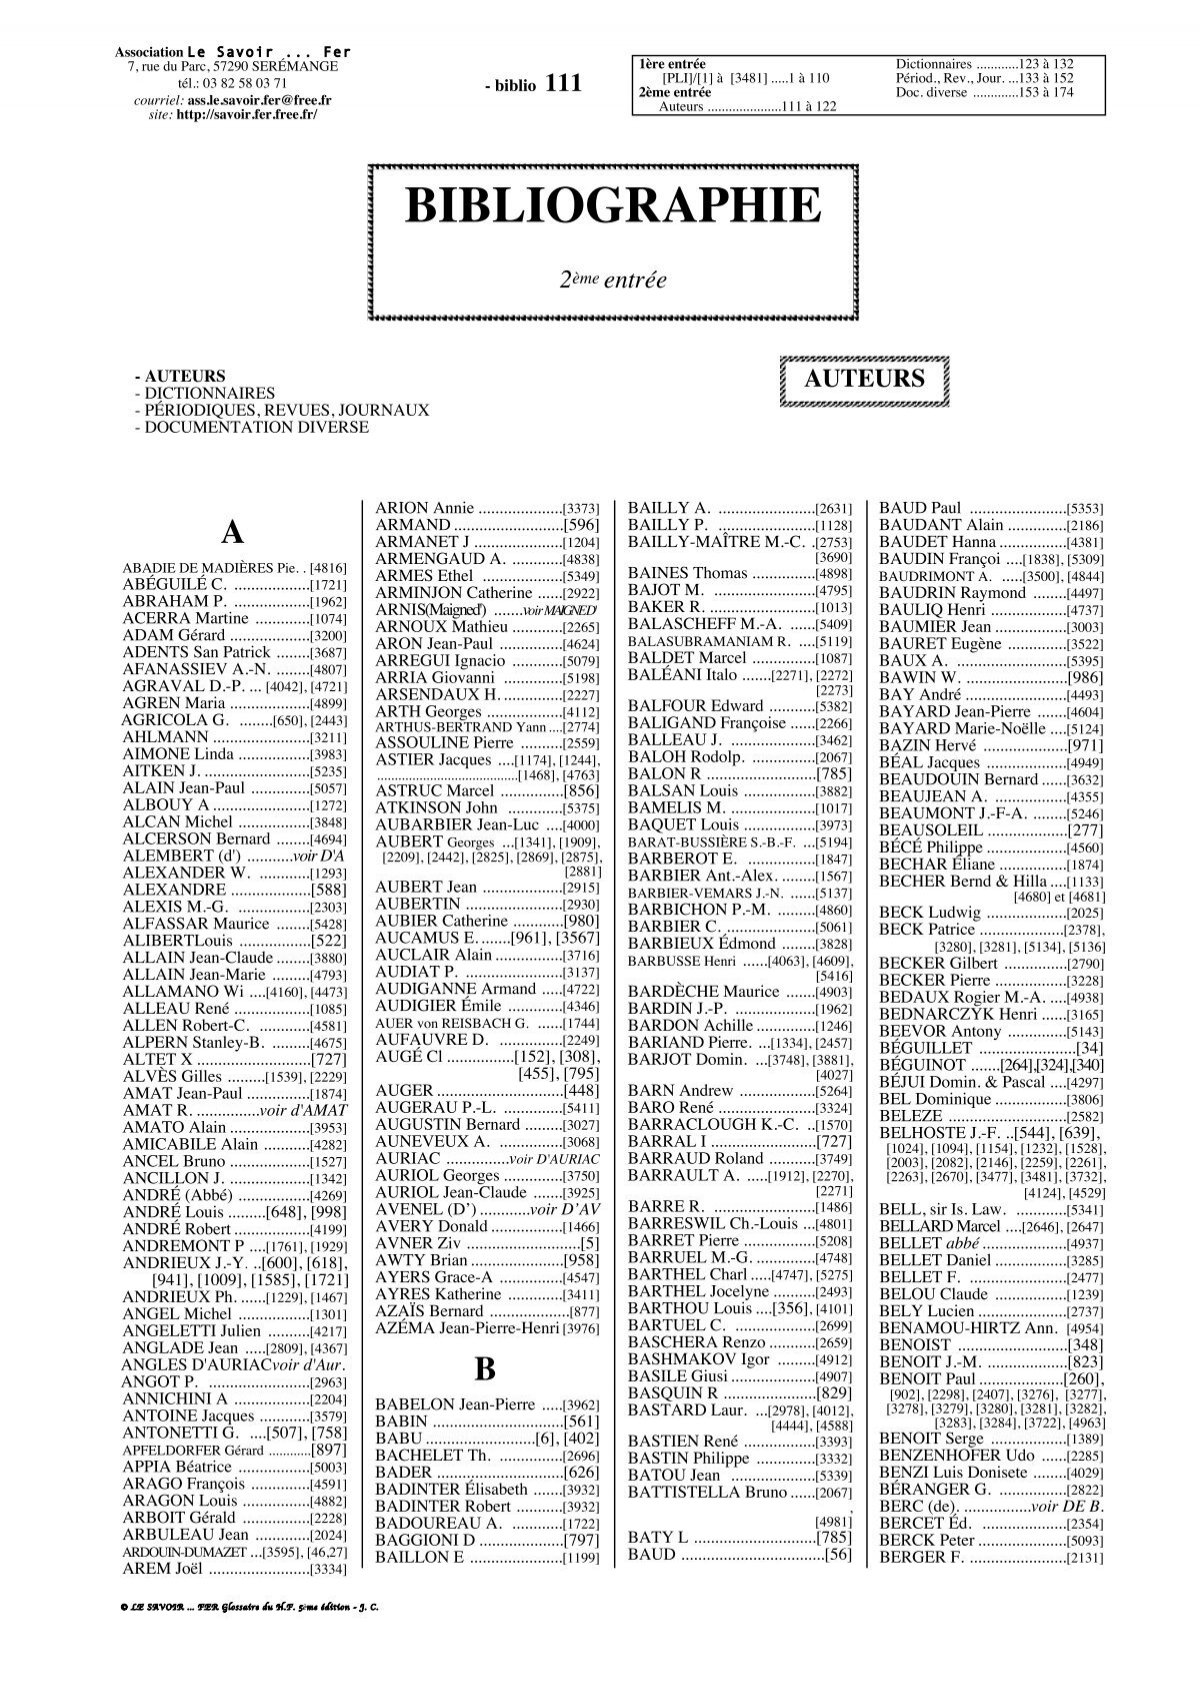 Agenda perpétuel de caisse Lima - 1 jour par page - 13 x 21 cm - noir -  Brepols Pas Cher